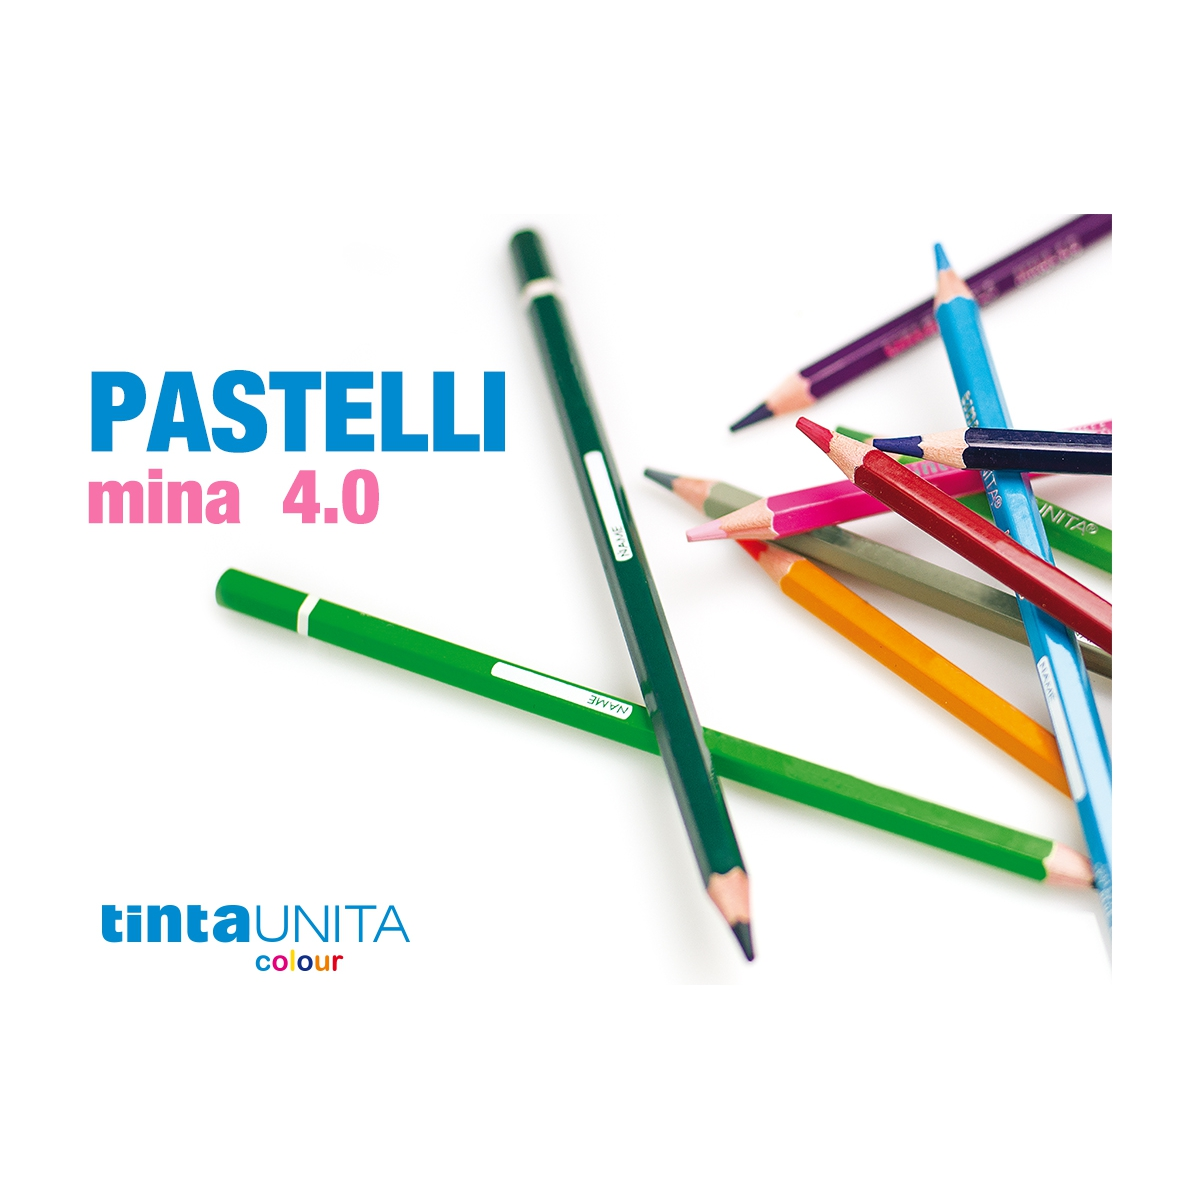 PASTELLI UNISON - BRIGHT 8 - PASTELLI MORBIDI REALIZZATI A MANO -  Multicolor Pescara